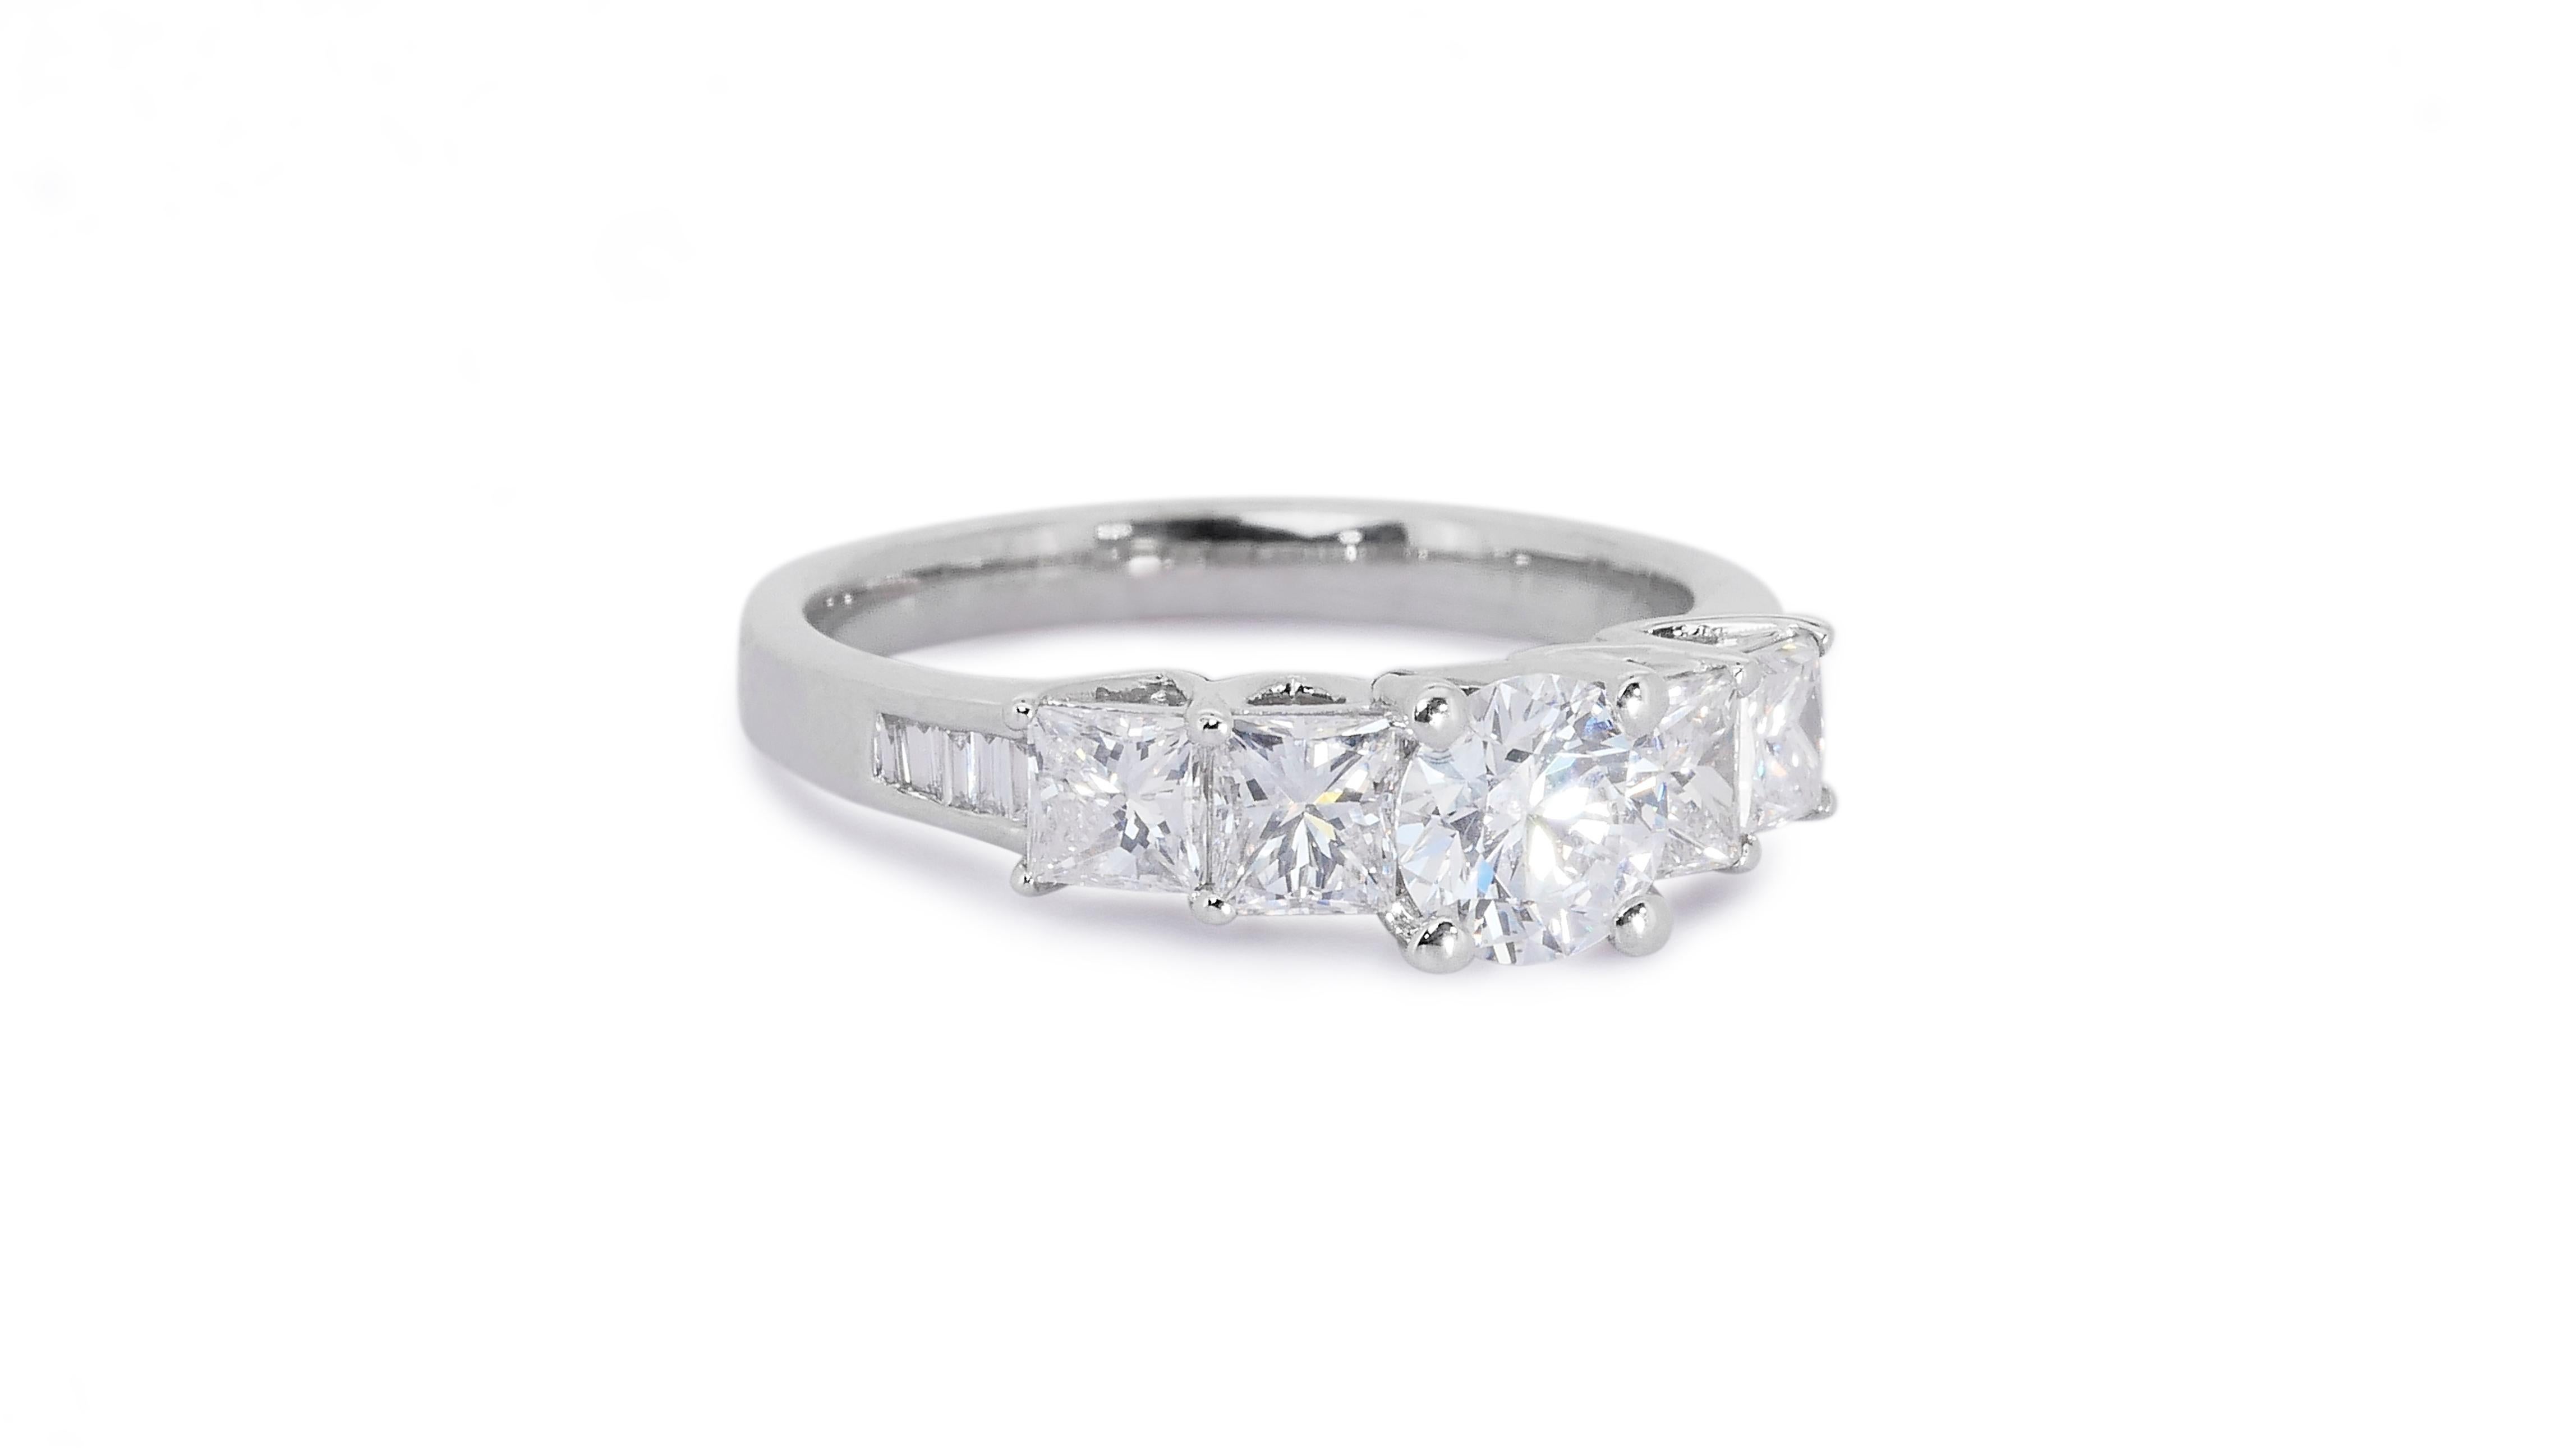 Ravishing 18k White Gold 5 Stone Ring W/ 1.16Ct Natural Diamonds AIG Certificate 2